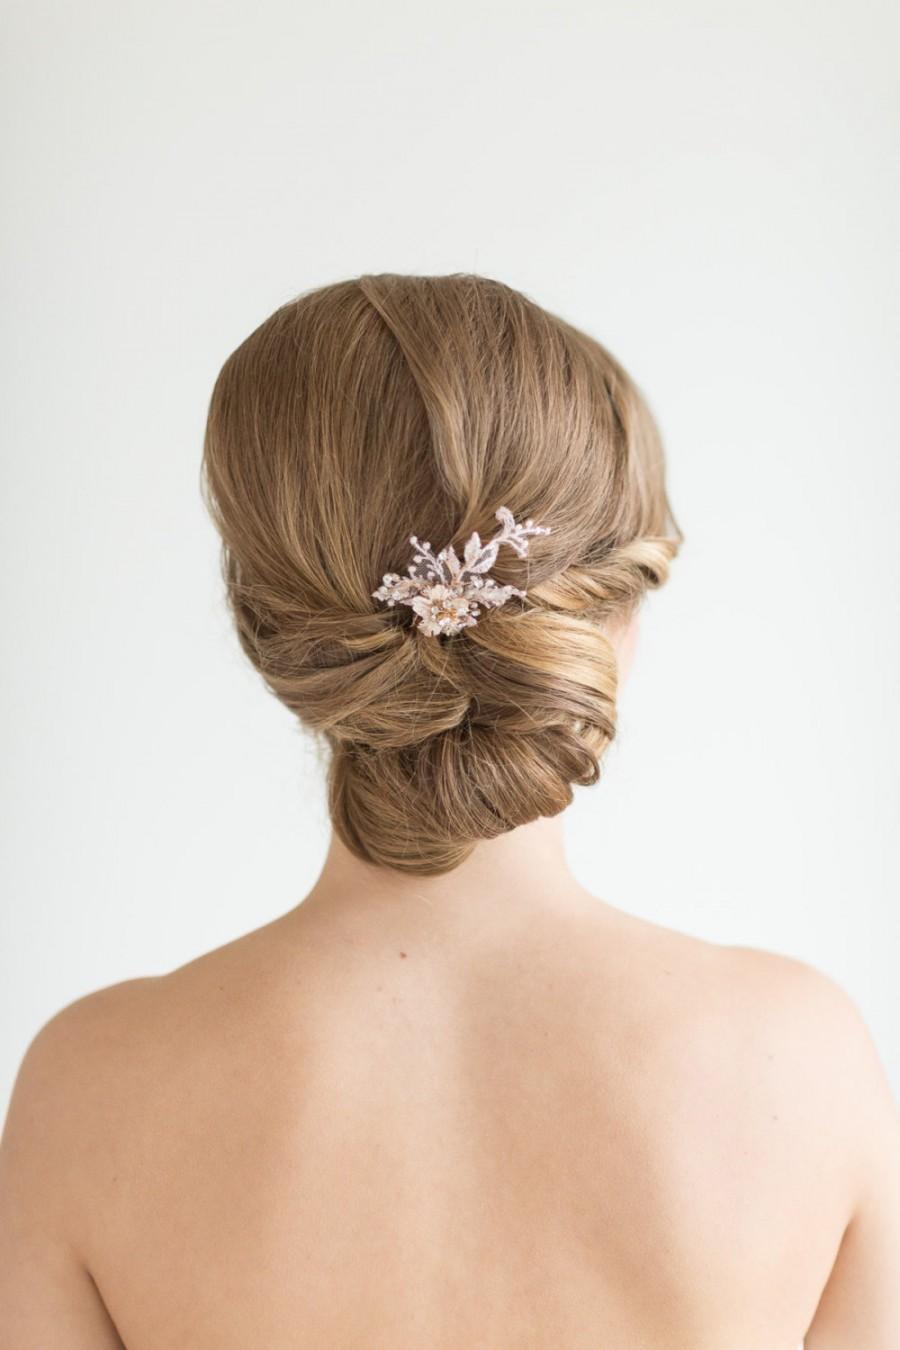 Mariage - Wedding Hair Pins, Bridal Hair Pins, Flower Wedding Hair Pins